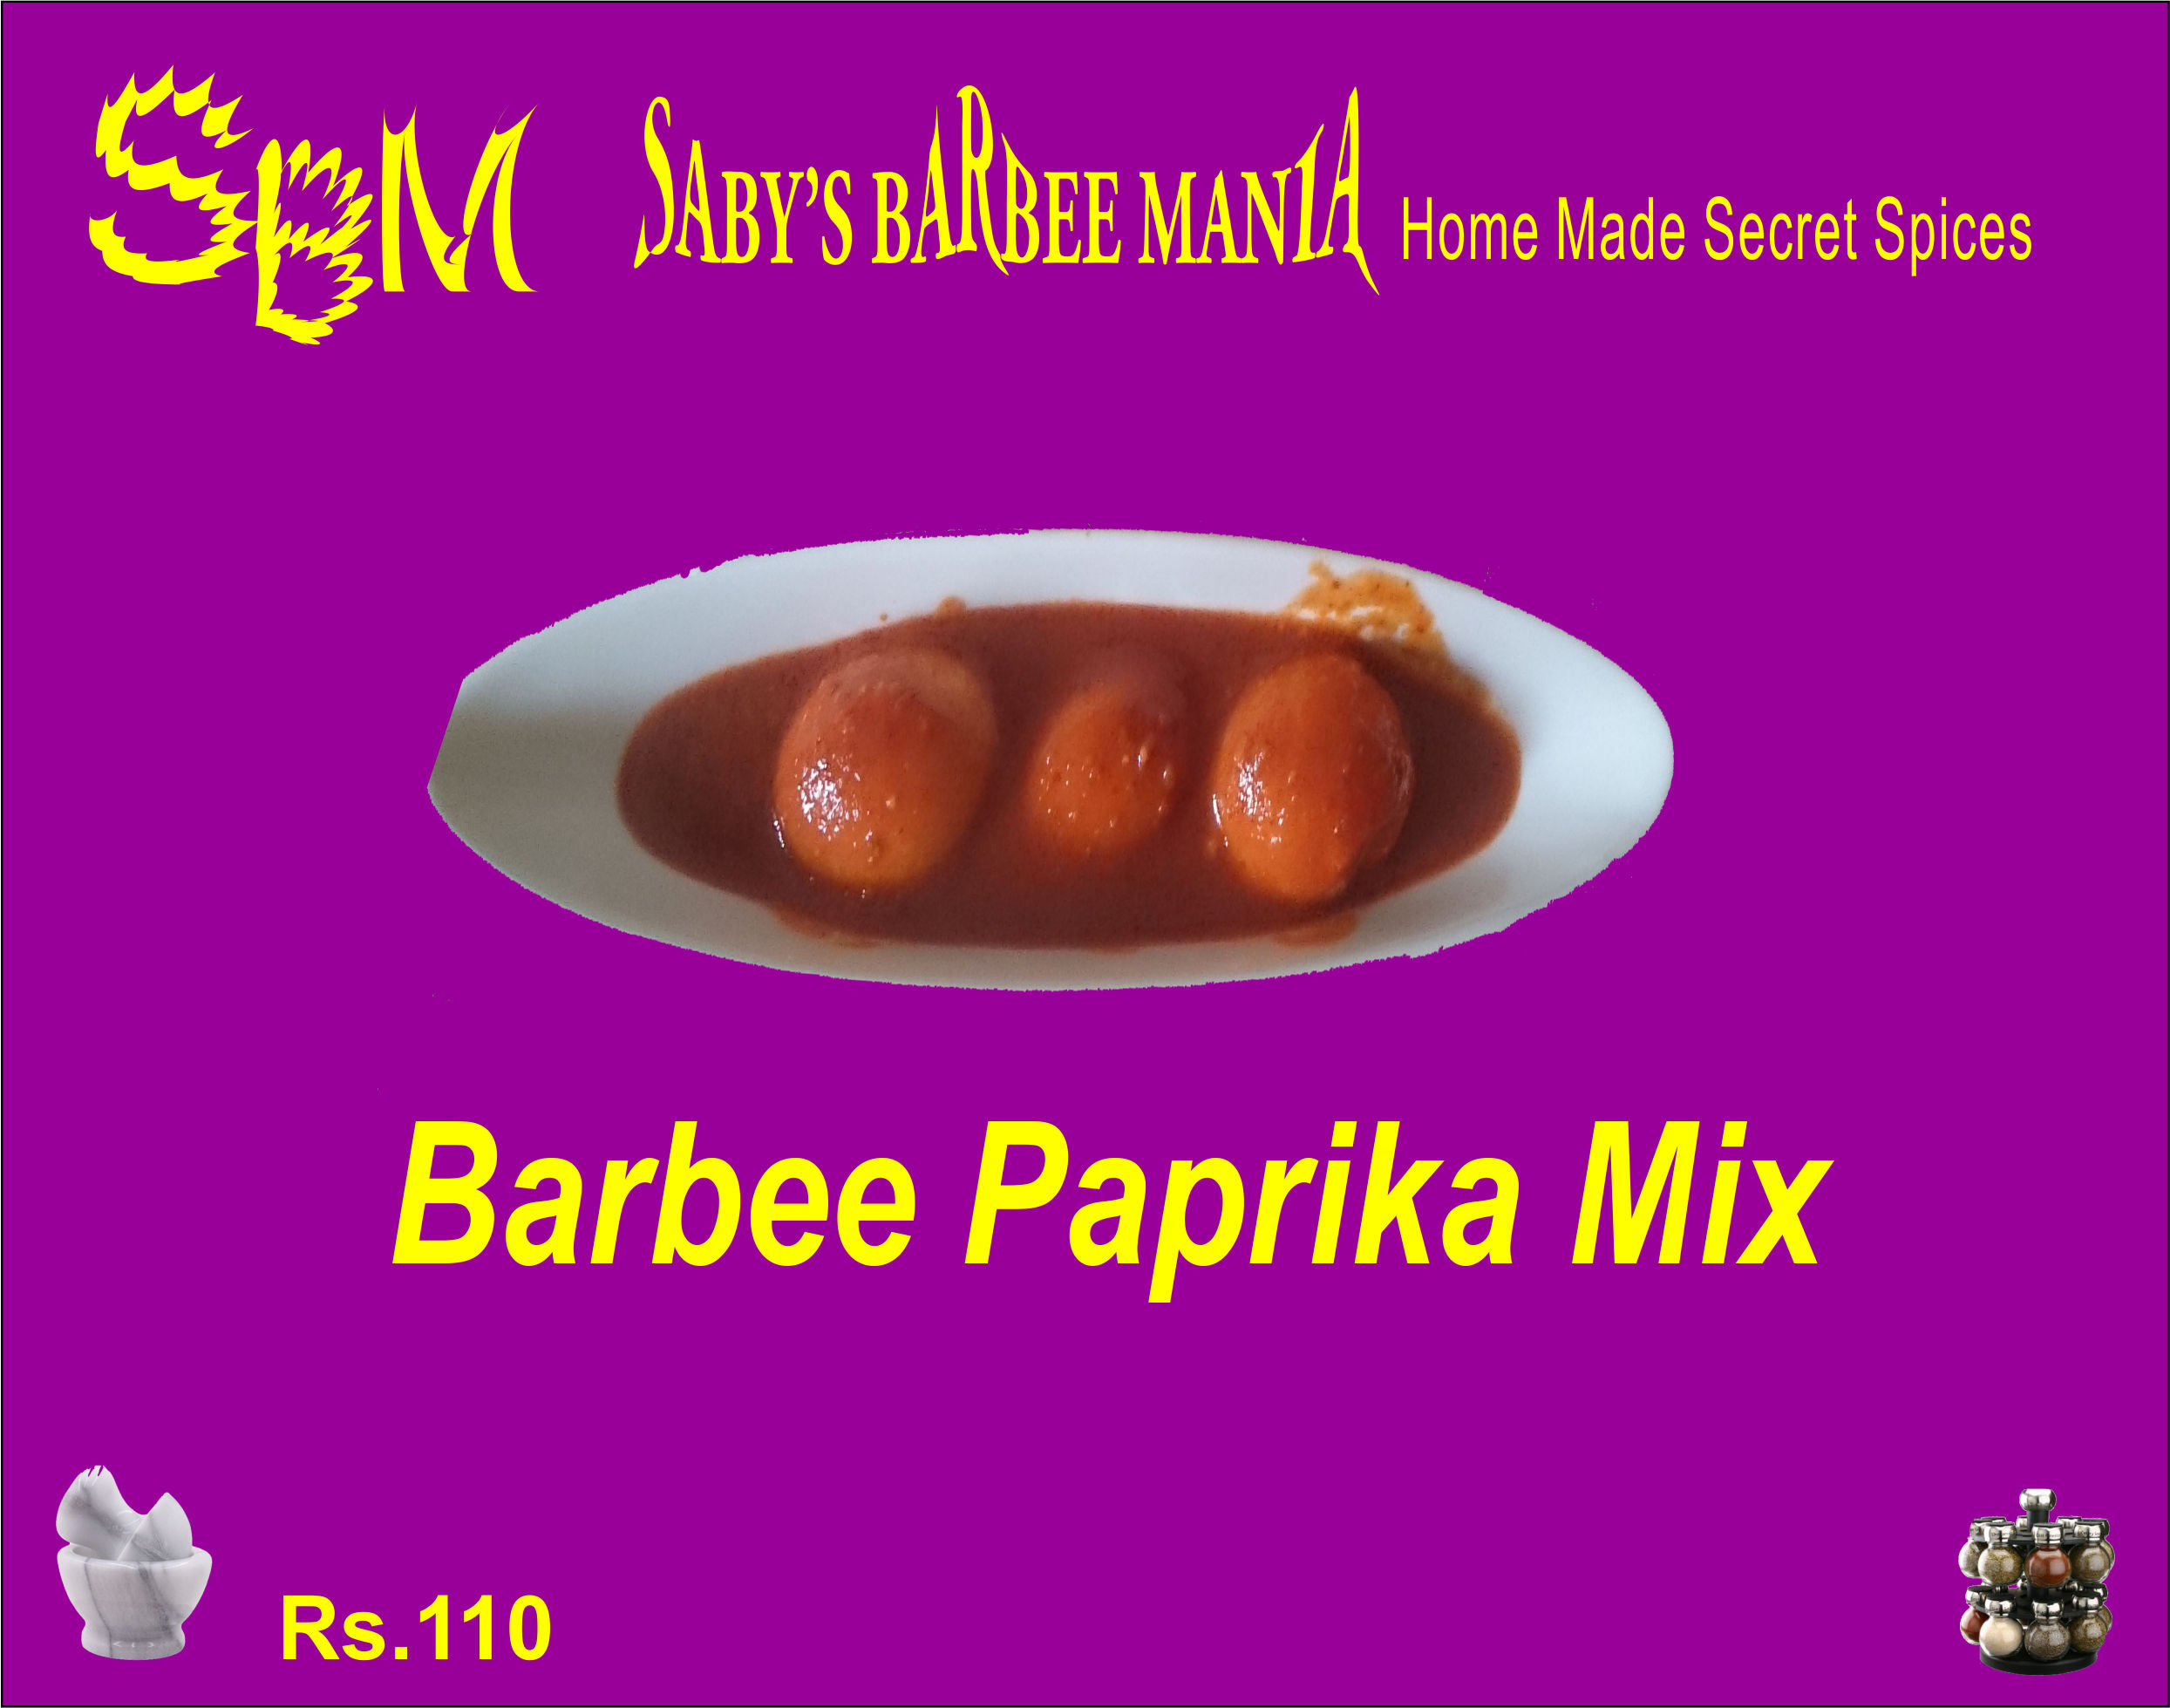 Barbee Paprika Mix